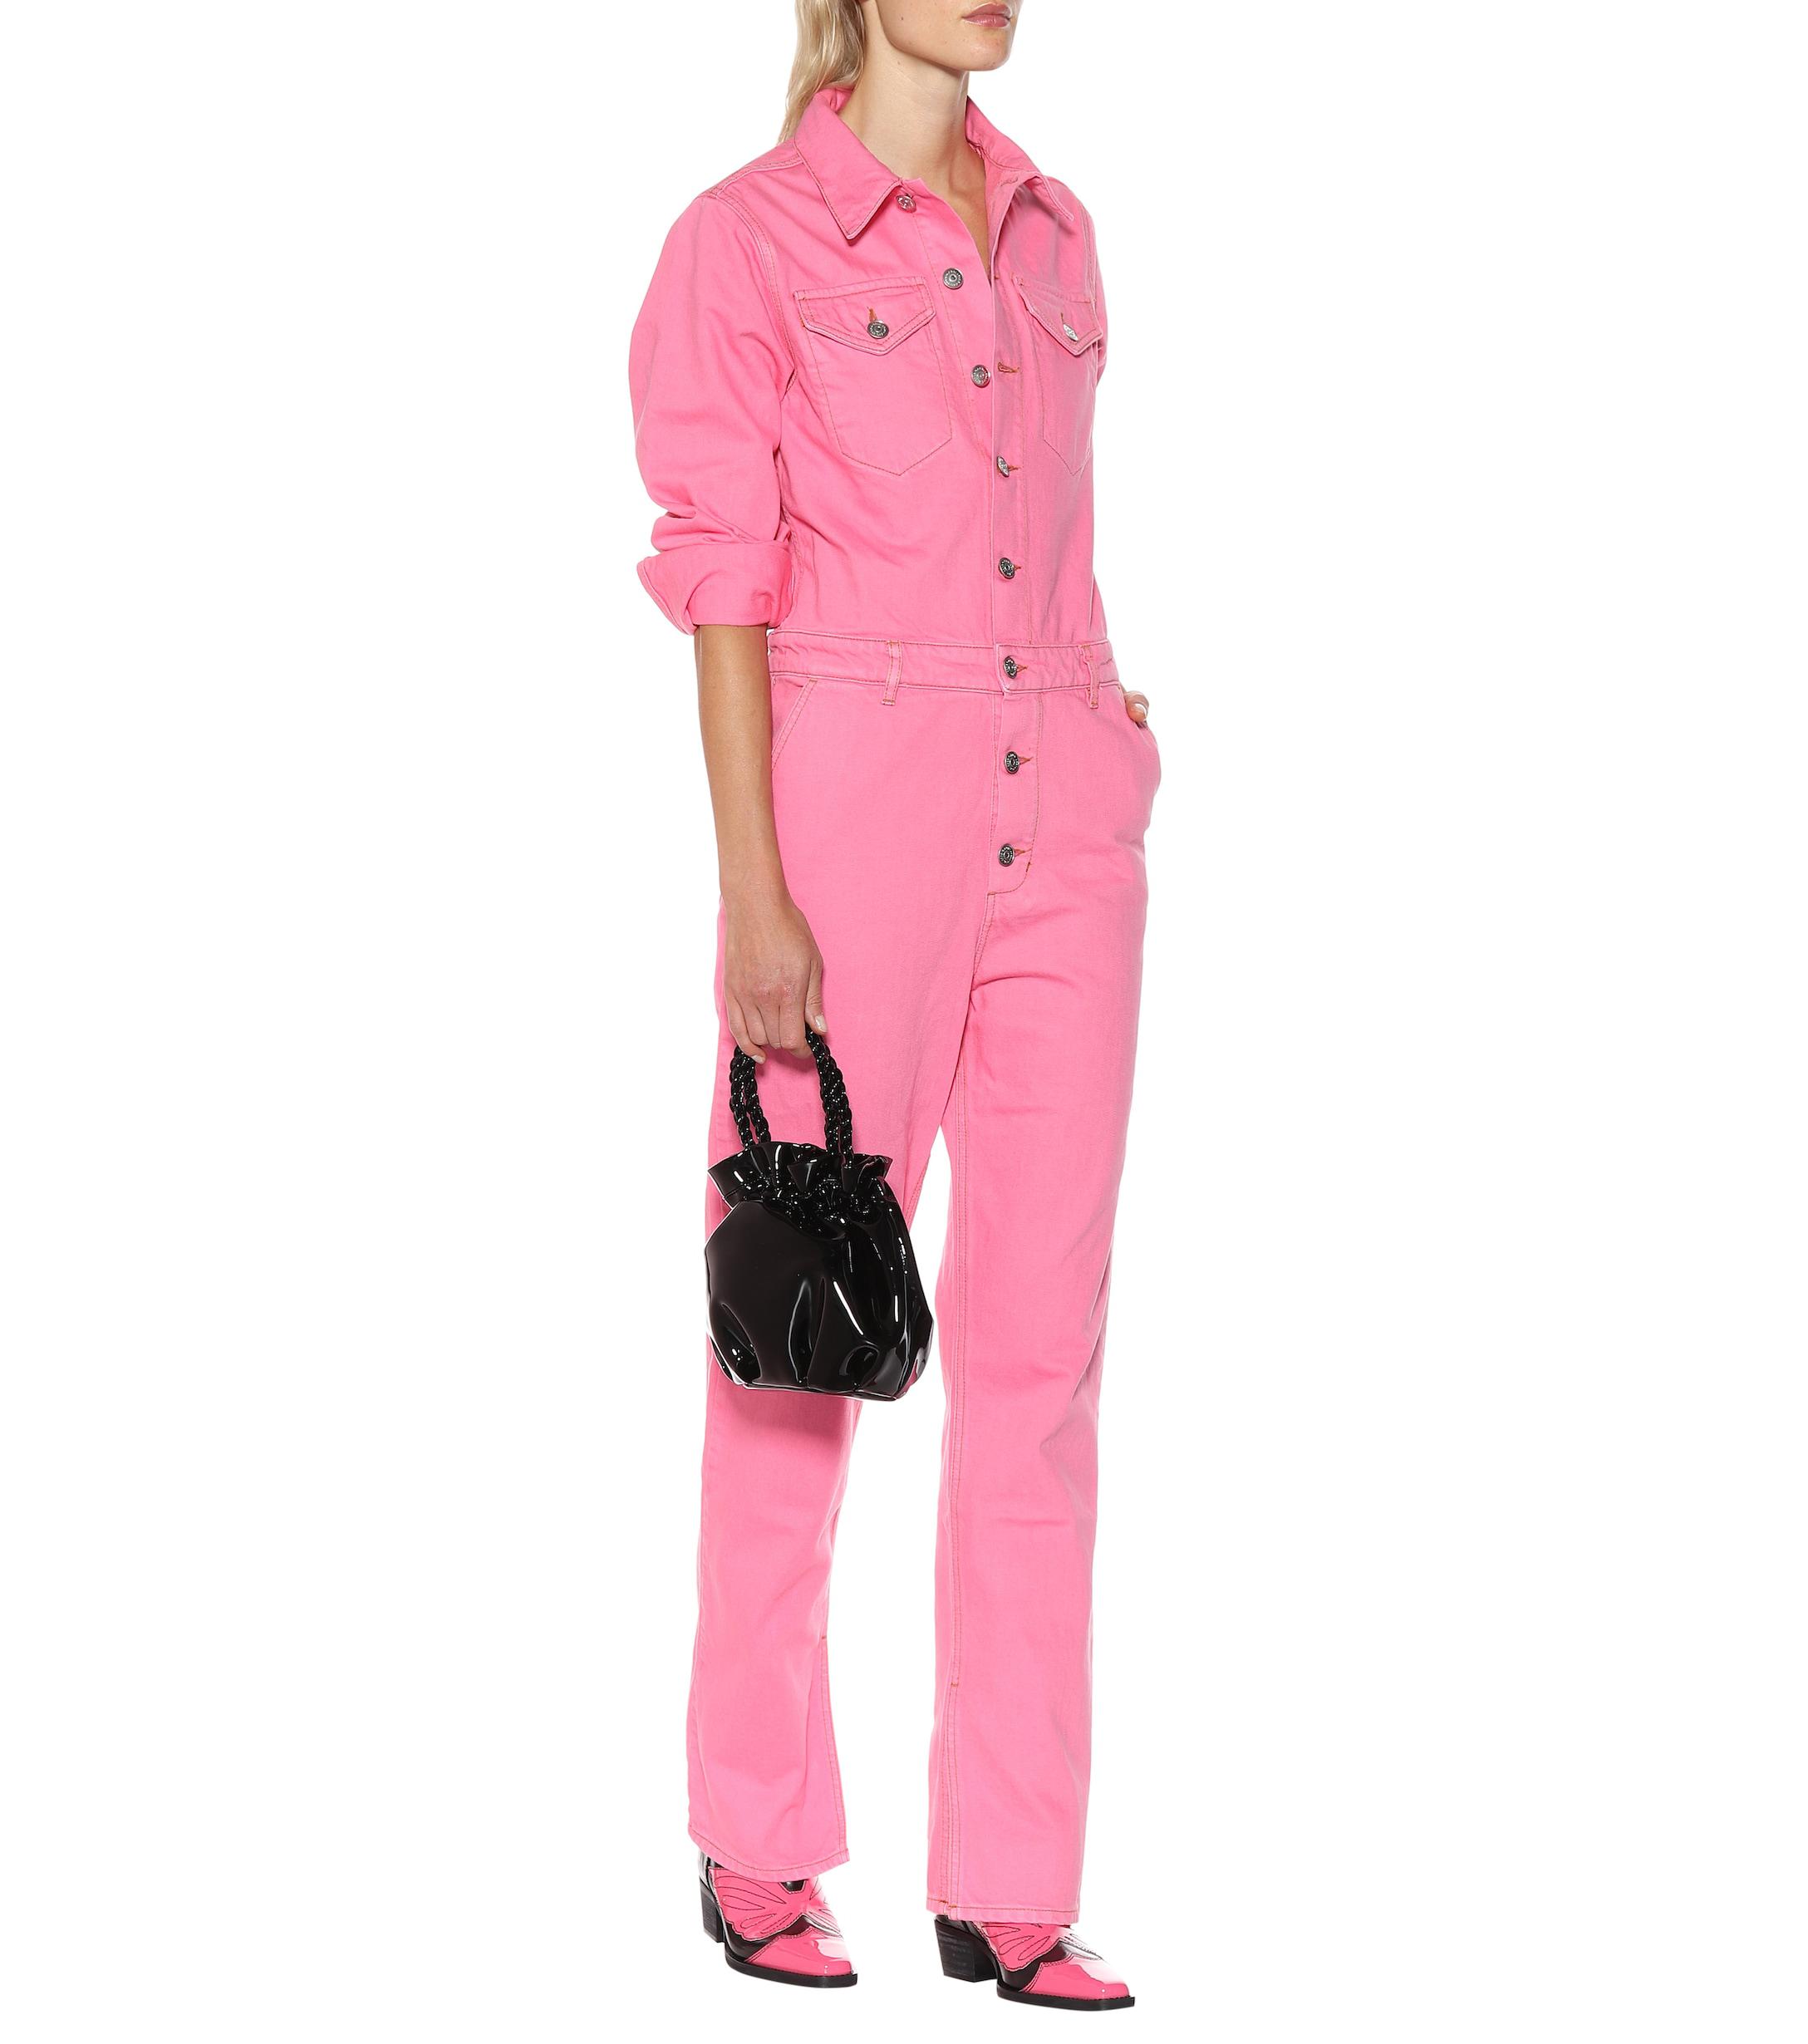 Ganni Cotton Denim Jumpsuit in Hot Pink (Pink) - Lyst